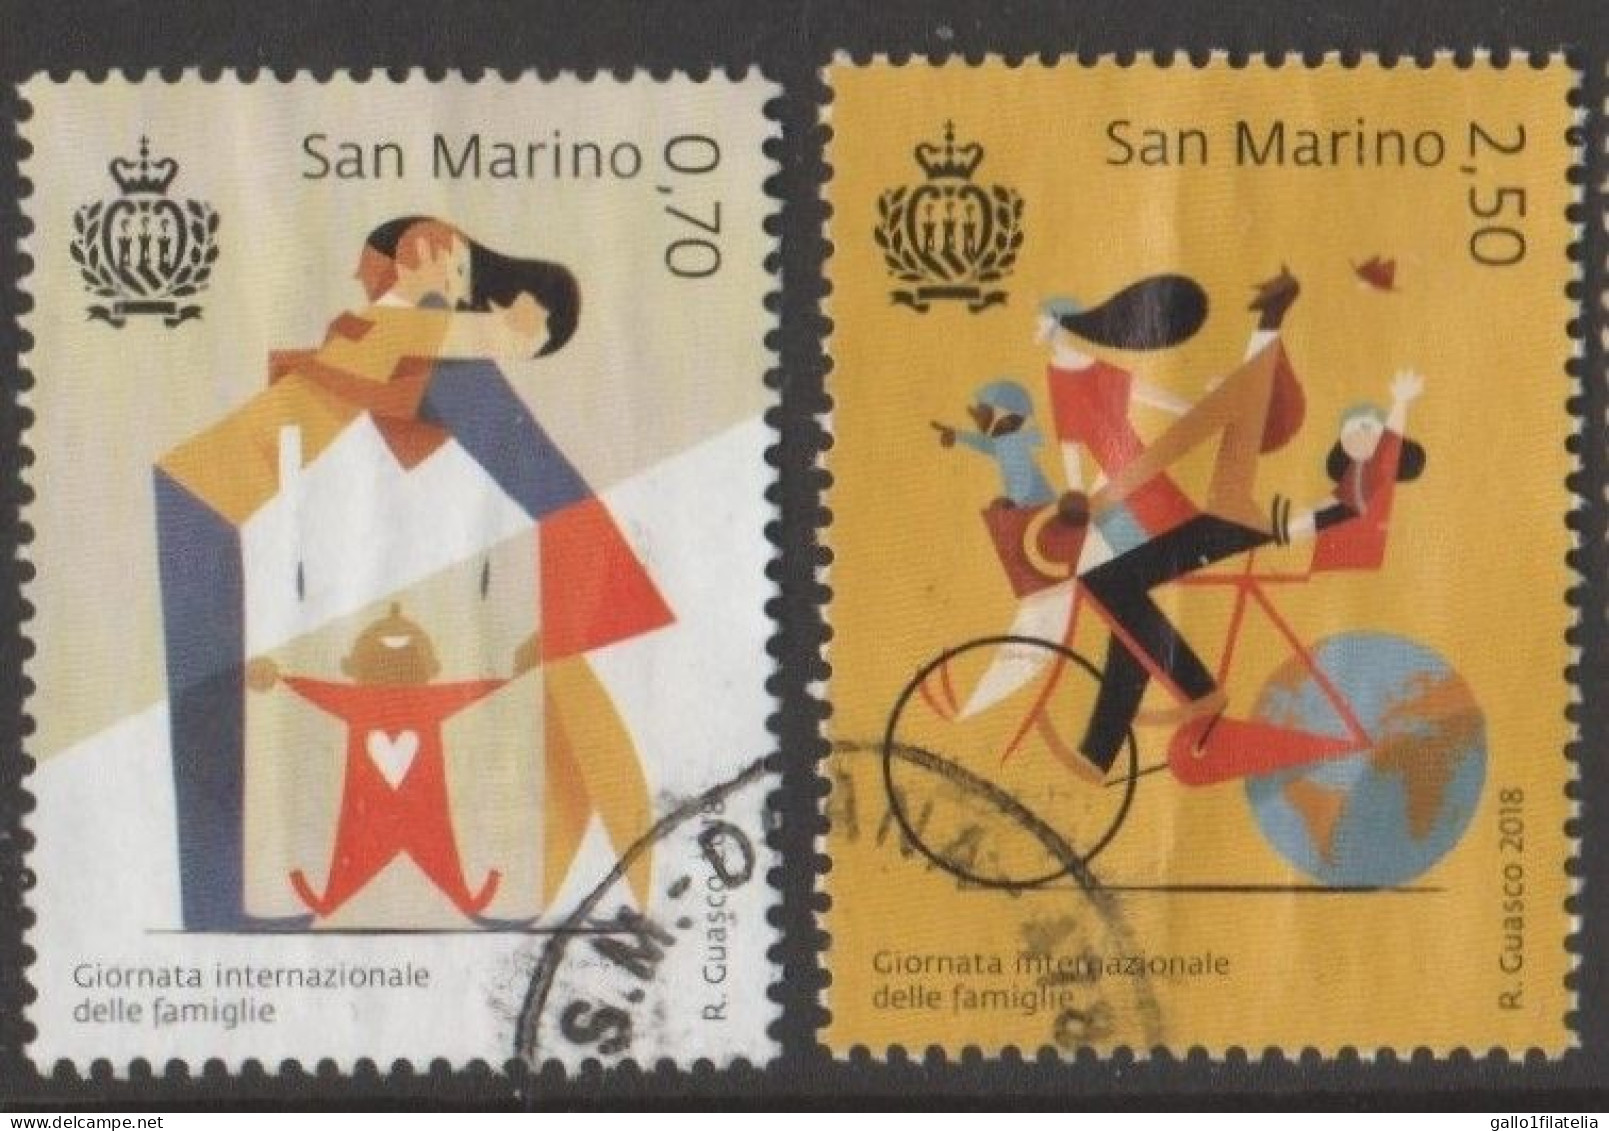 2018 - SAN MARINO - GIORNATA INTERNAZIONALE DELLE FAMIGLIE / INTERNATIONAL FAMILIES DAY - USATO. - Used Stamps